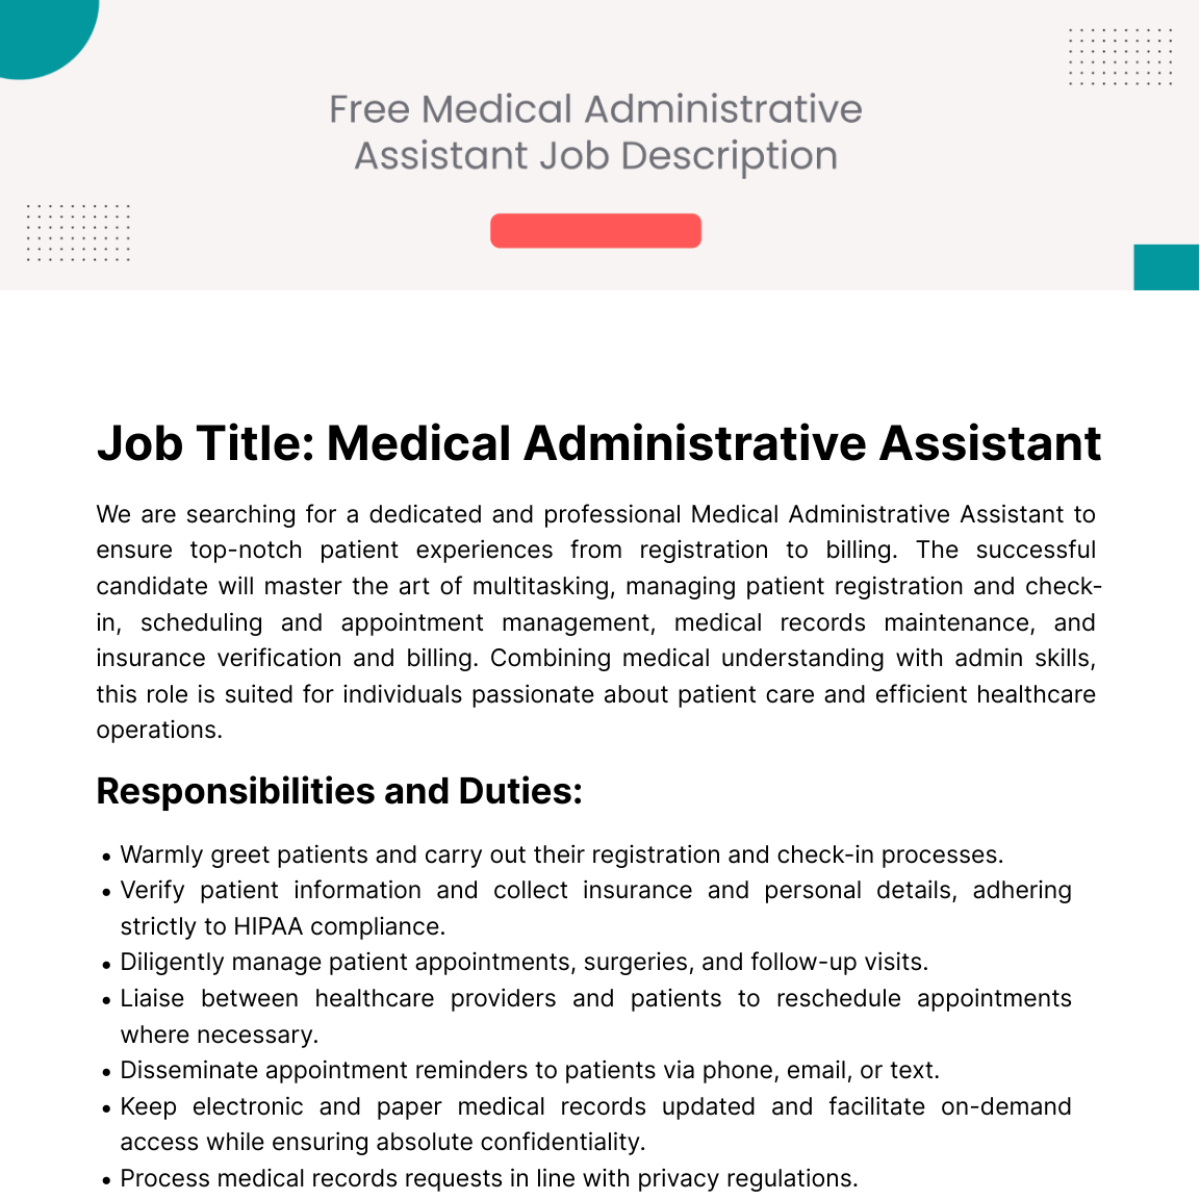 Free Medical Administrative Assistant Job Description Template